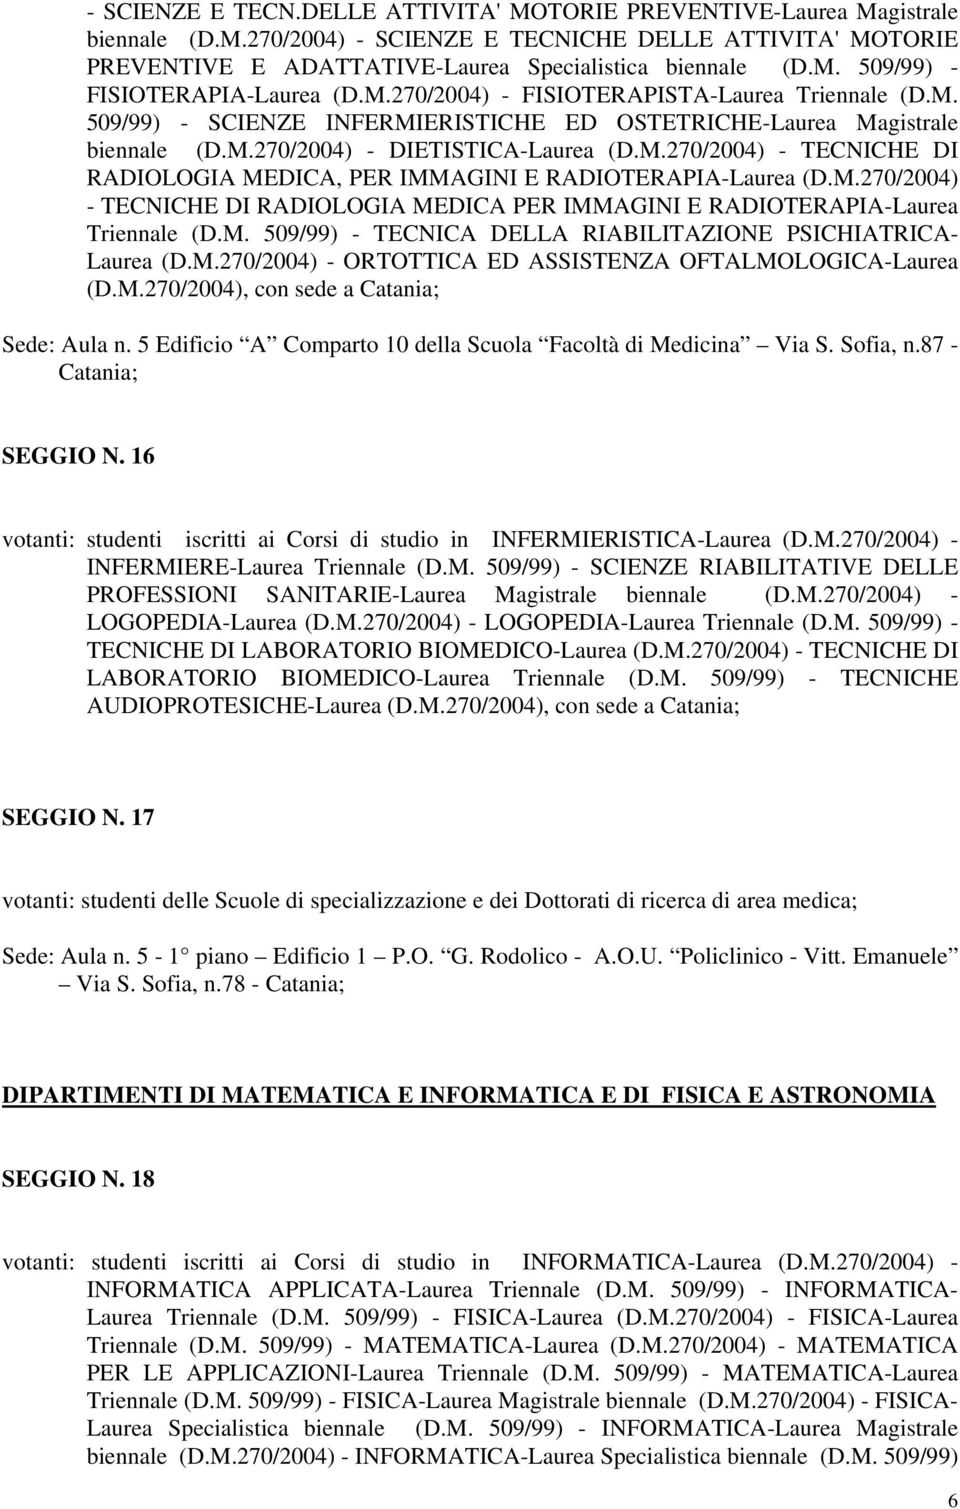 M.270/2004) - TECNICHE DI RADIOLOGIA MEDICA PER IMMAGINI E RADIOTERAPIA-Laurea Triennale (D.M. 509/99) - TECNICA DELLA RIABILITAZIONE PSICHIATRICA- Laurea (D.M.270/2004) - ORTOTTICA ED ASSISTENZA OFTALMOLOGICA-Laurea (D.